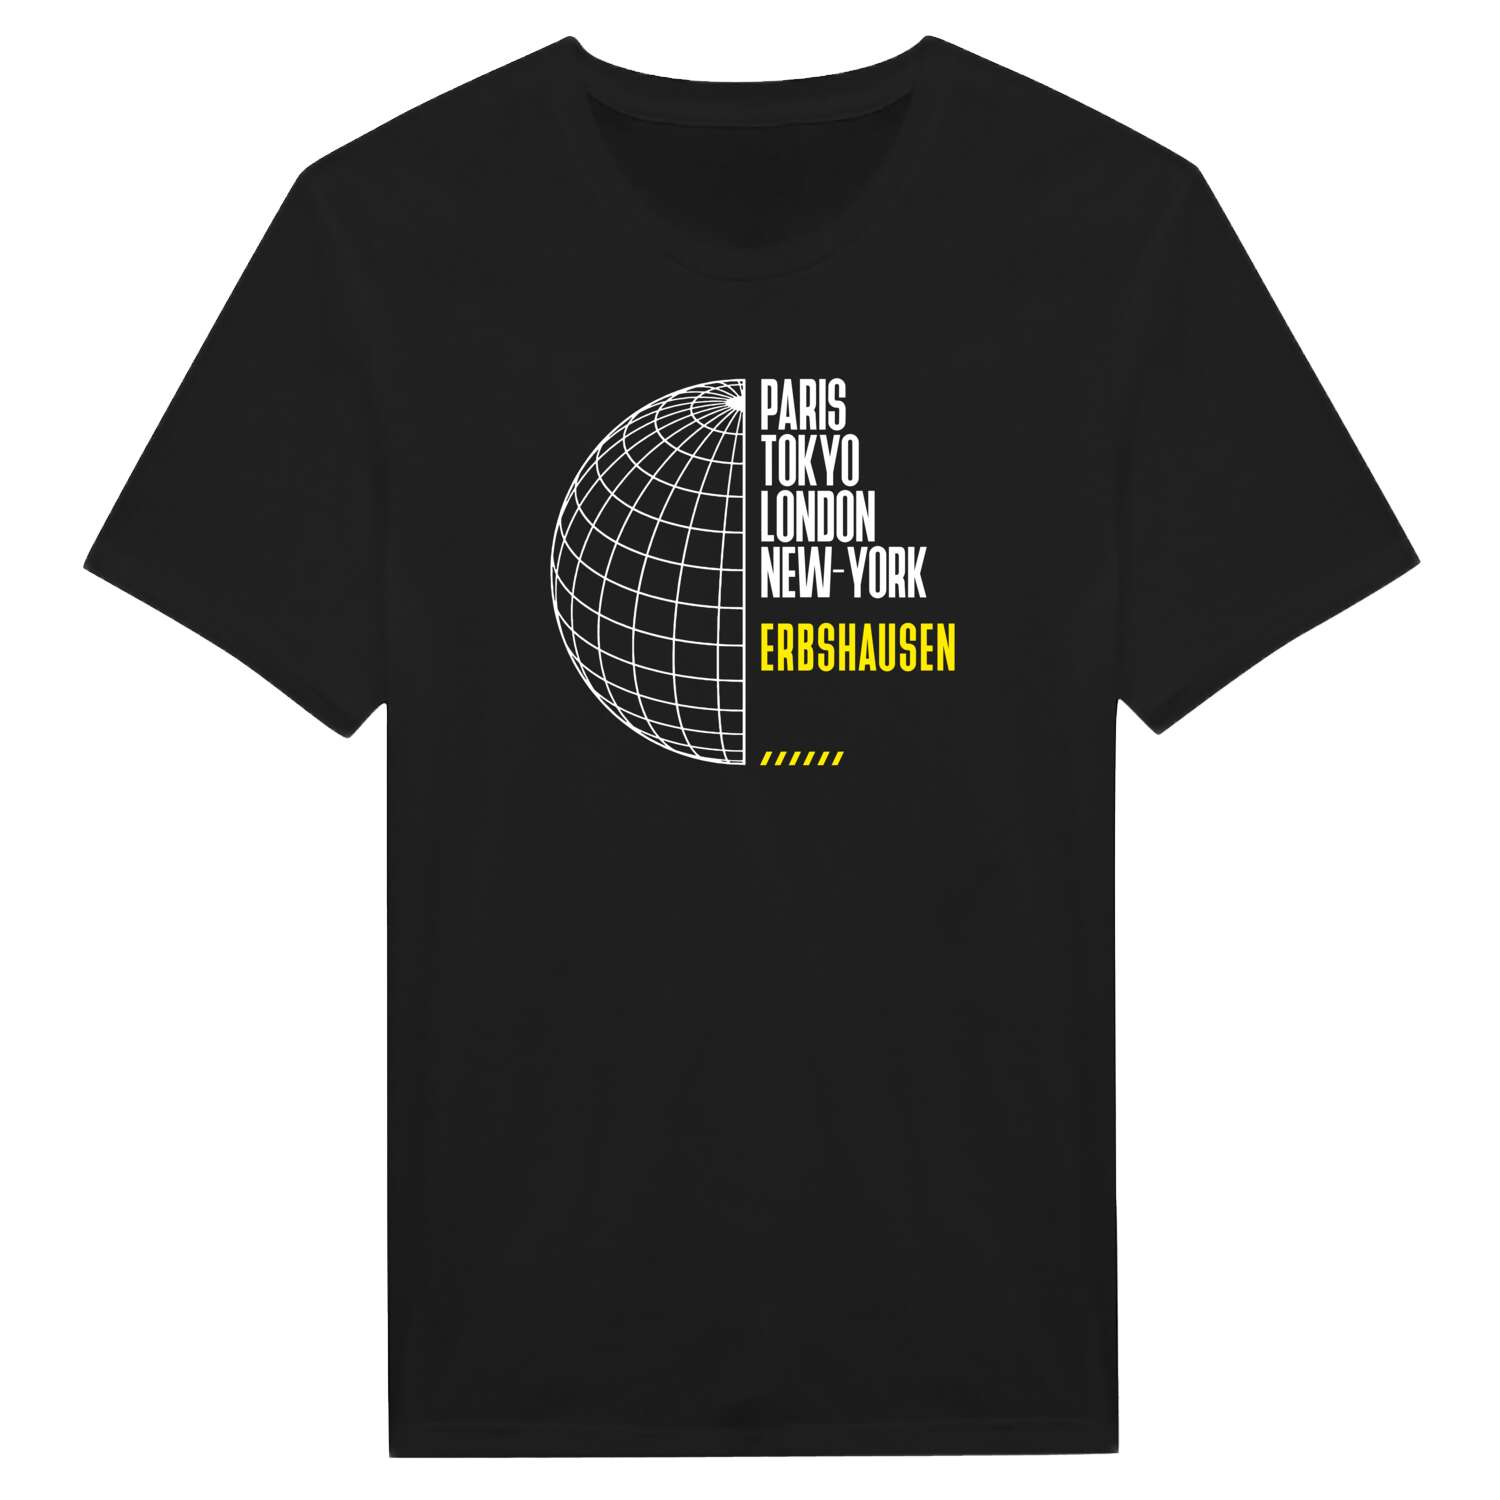 Erbshausen T-Shirt »Paris Tokyo London«